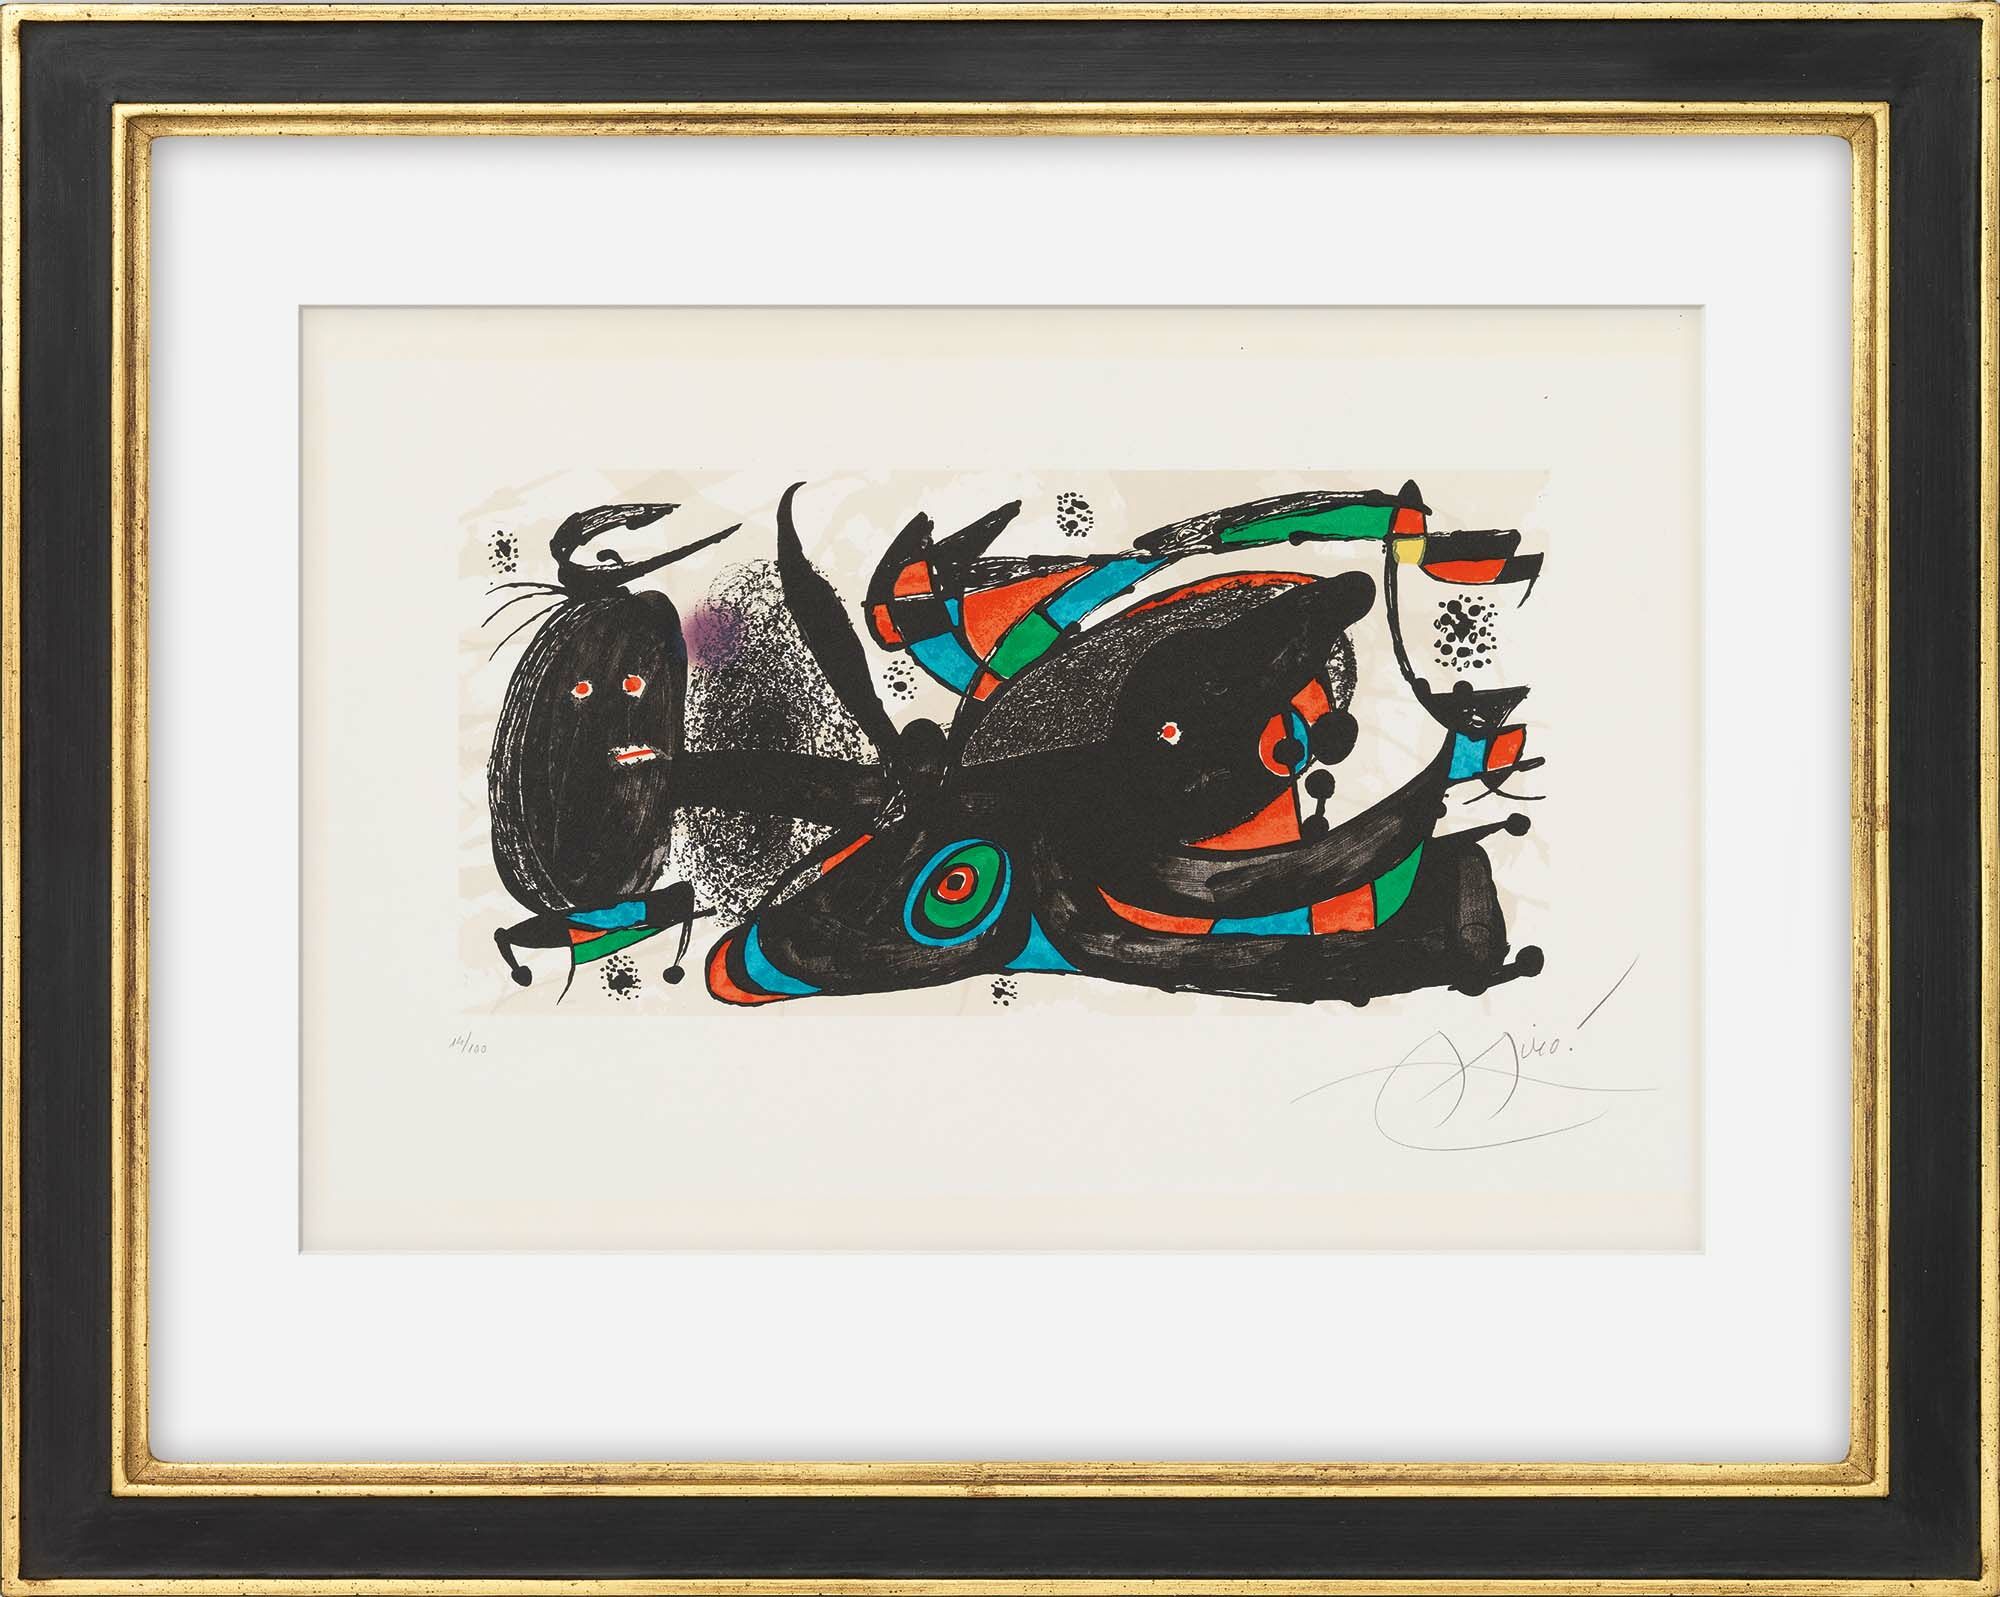 Tableau "Miro comme sculpteur" (1974) von Joan Miró